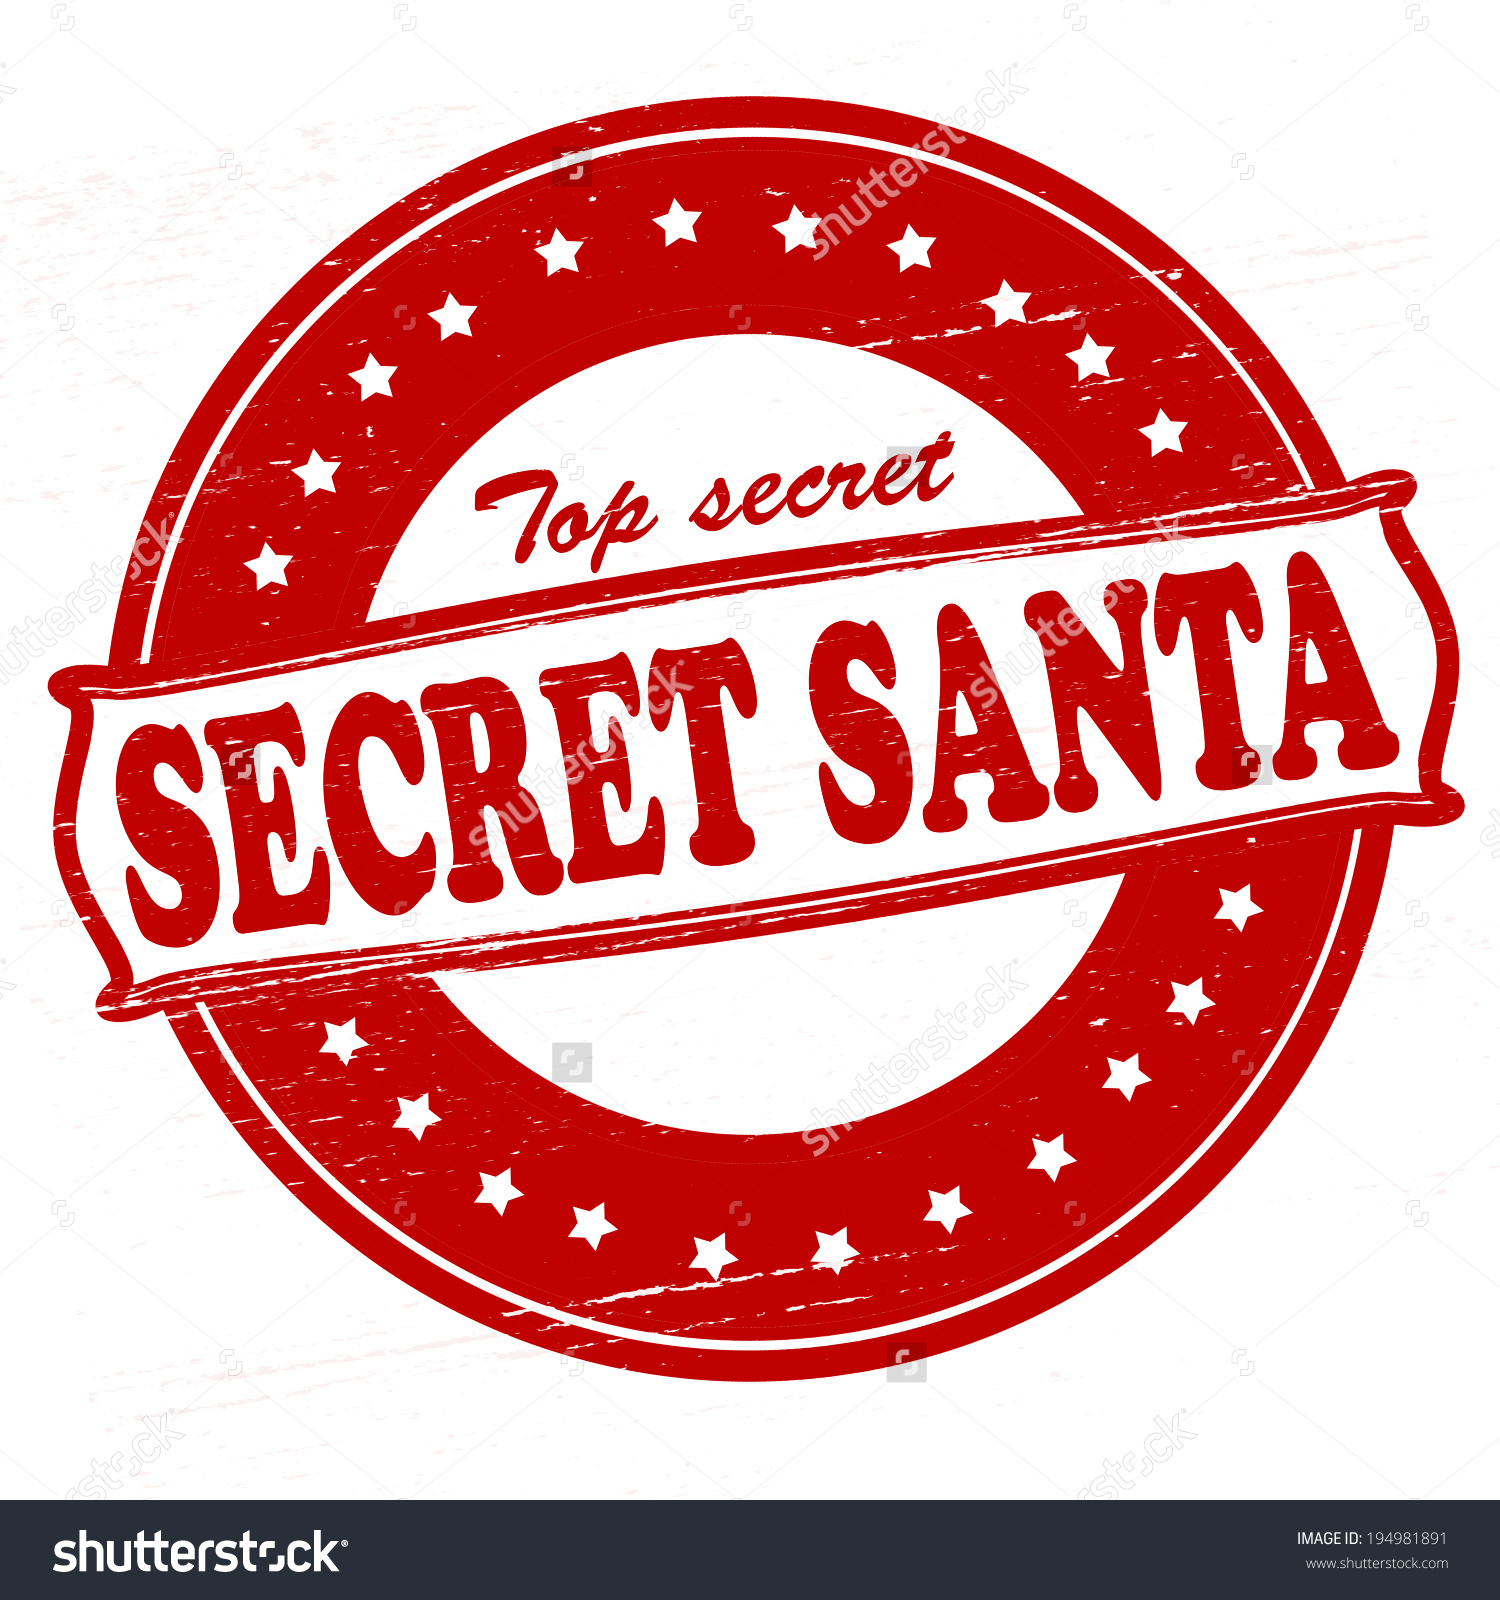 Secret Santa 2 4 25x5 5 Paper